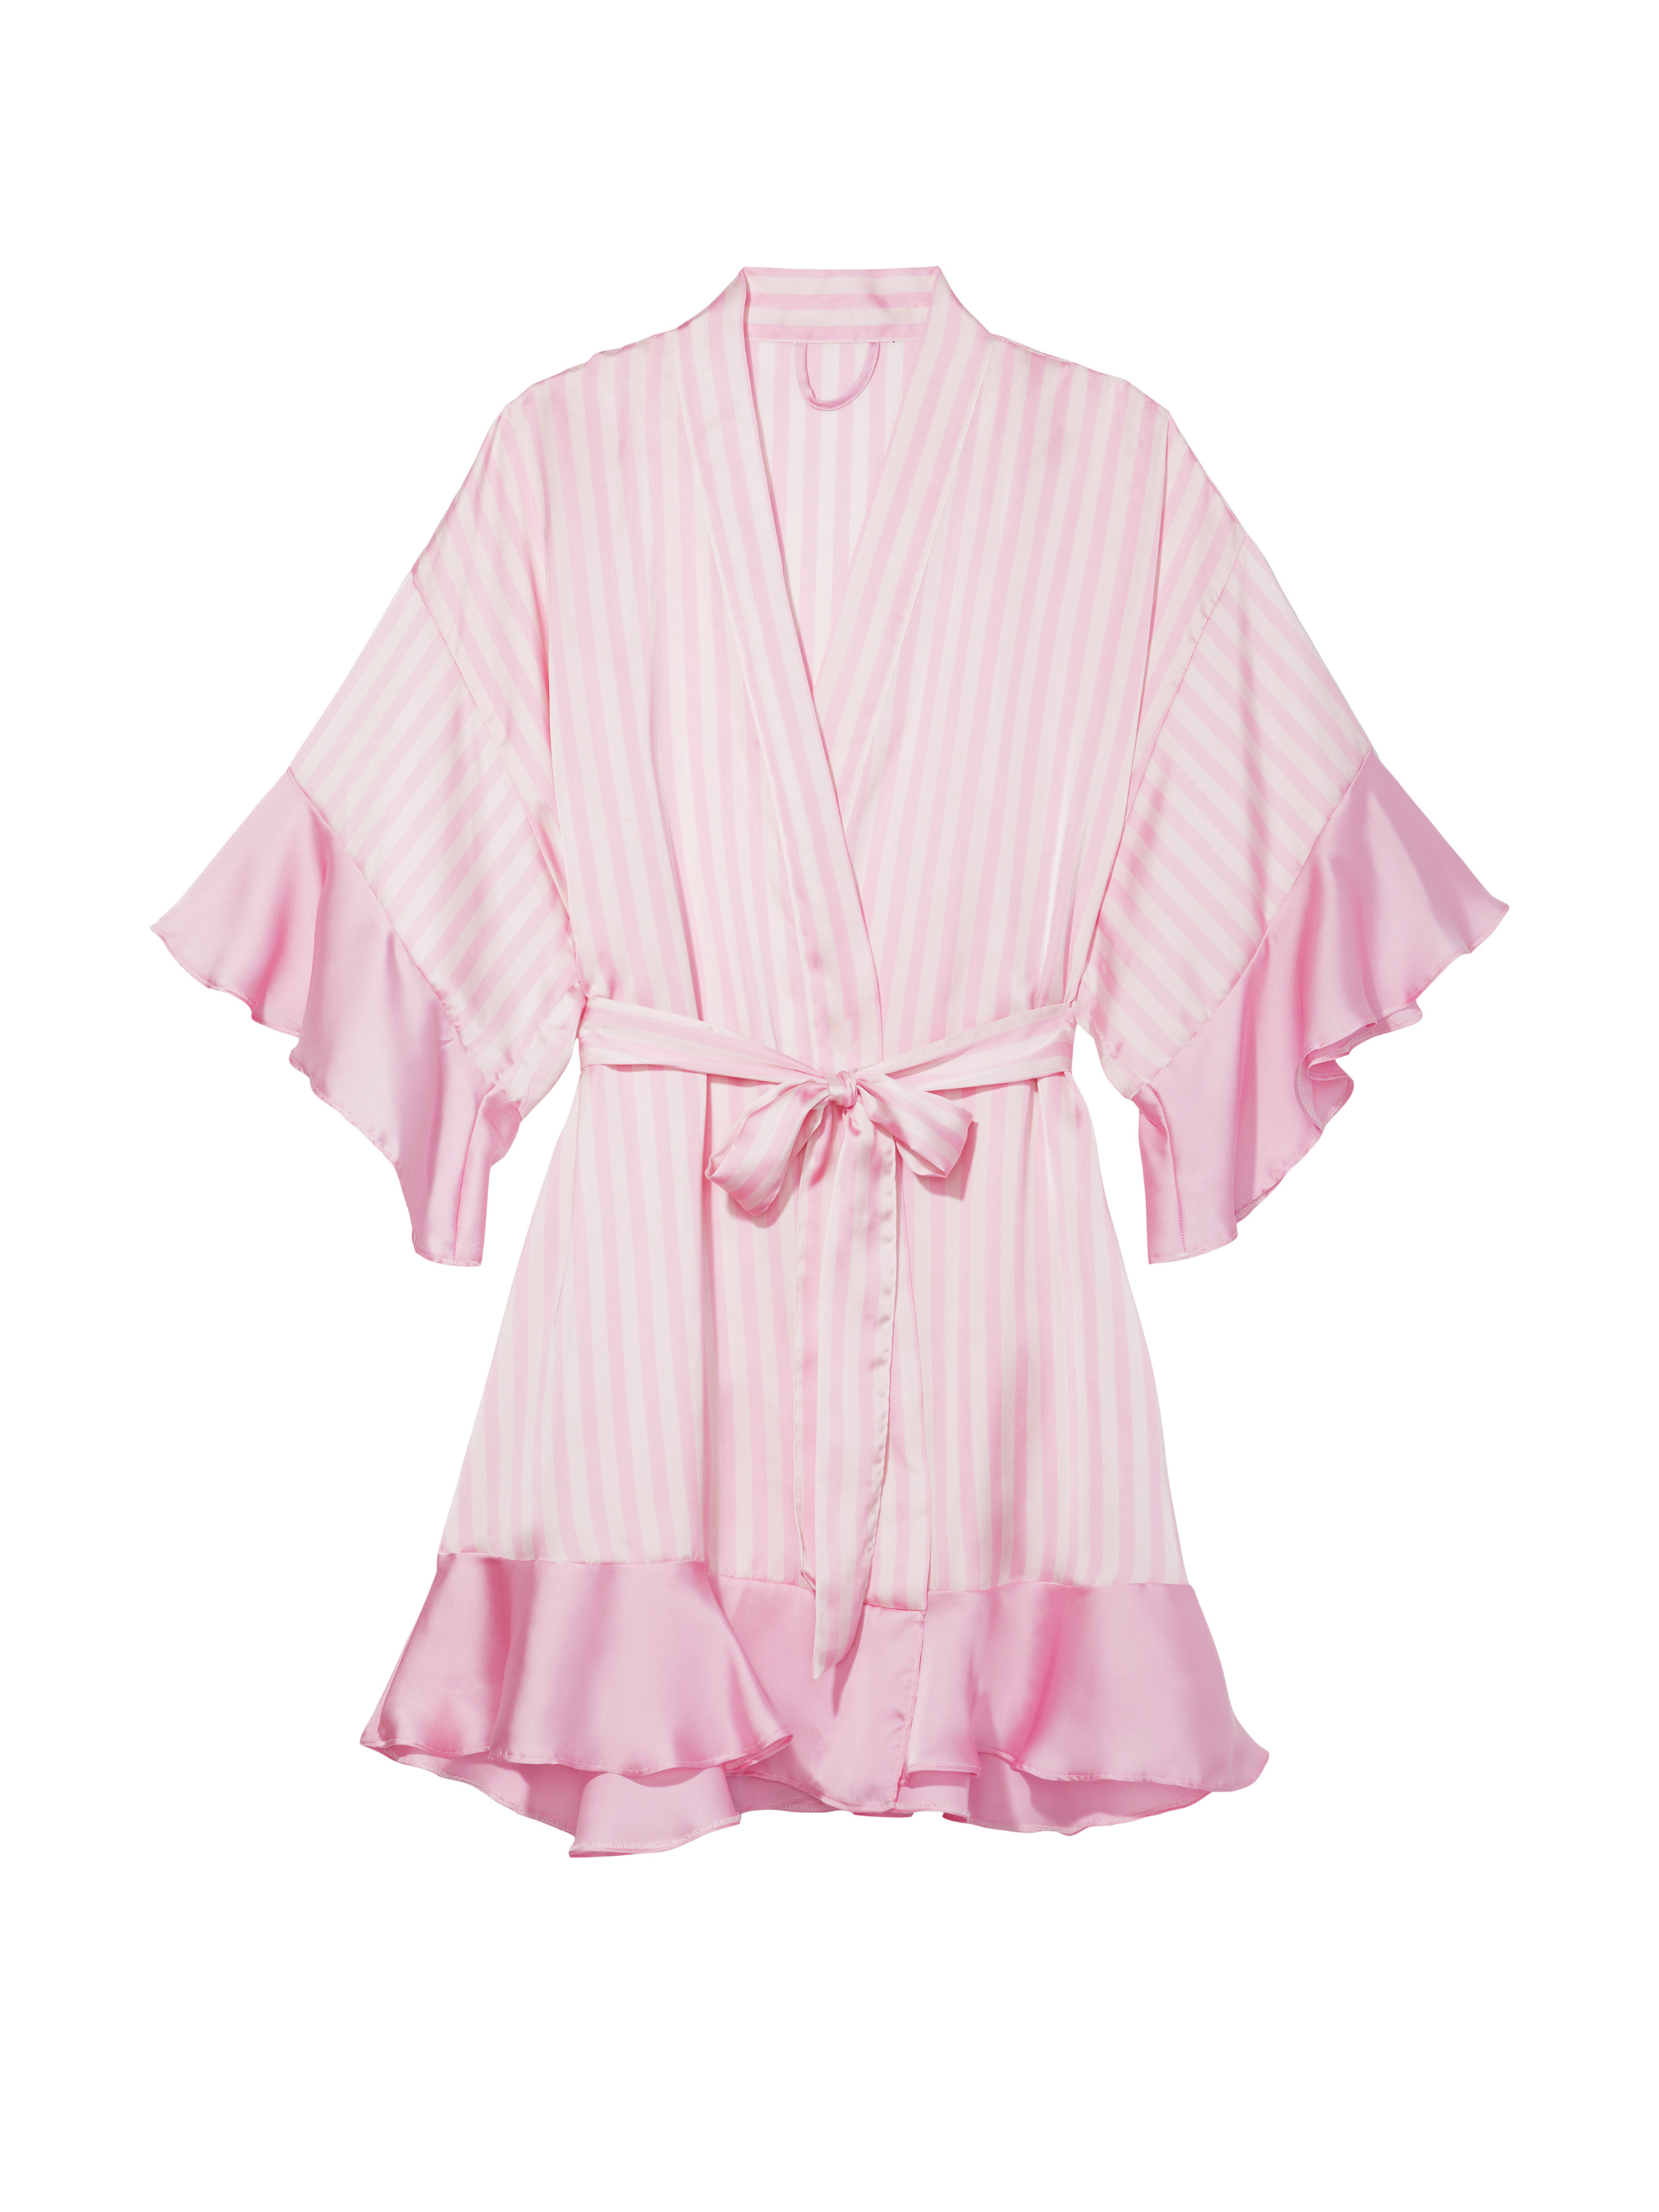 Kimono Volanté En Satin, Angel Pink Stripe, large